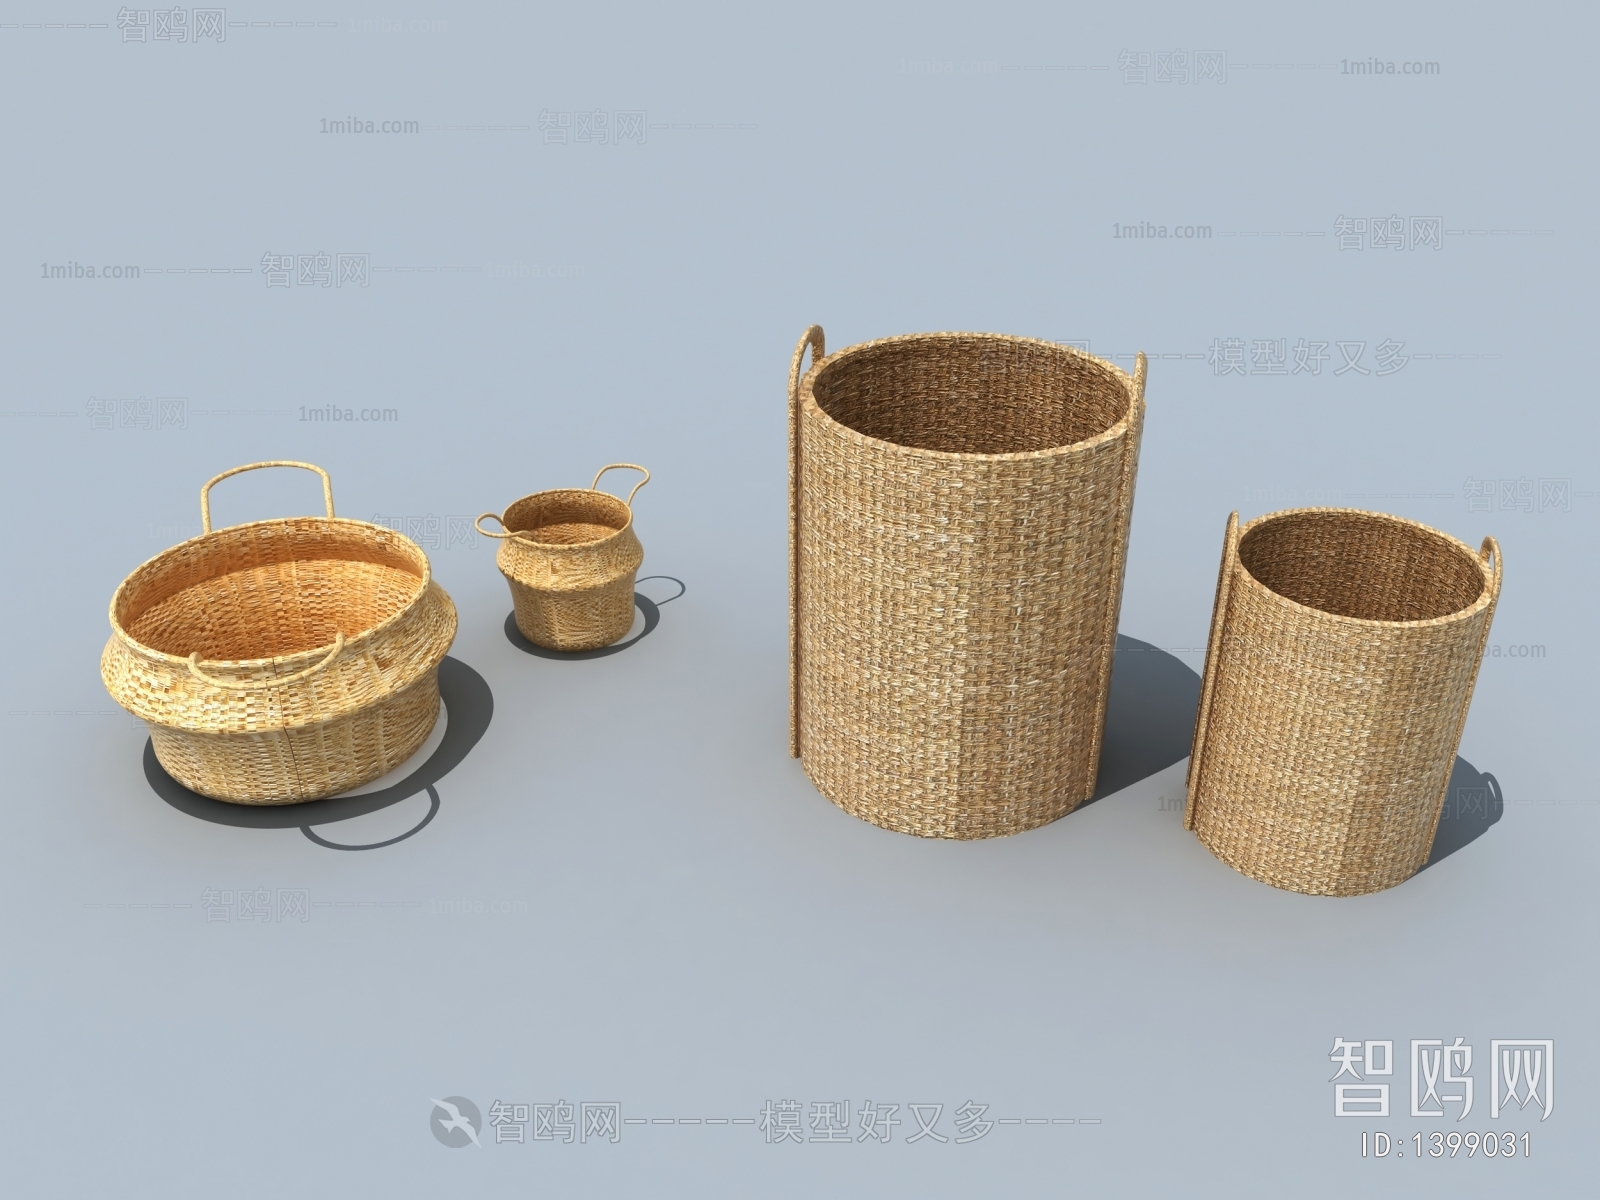 Chinese Style Storage Basket